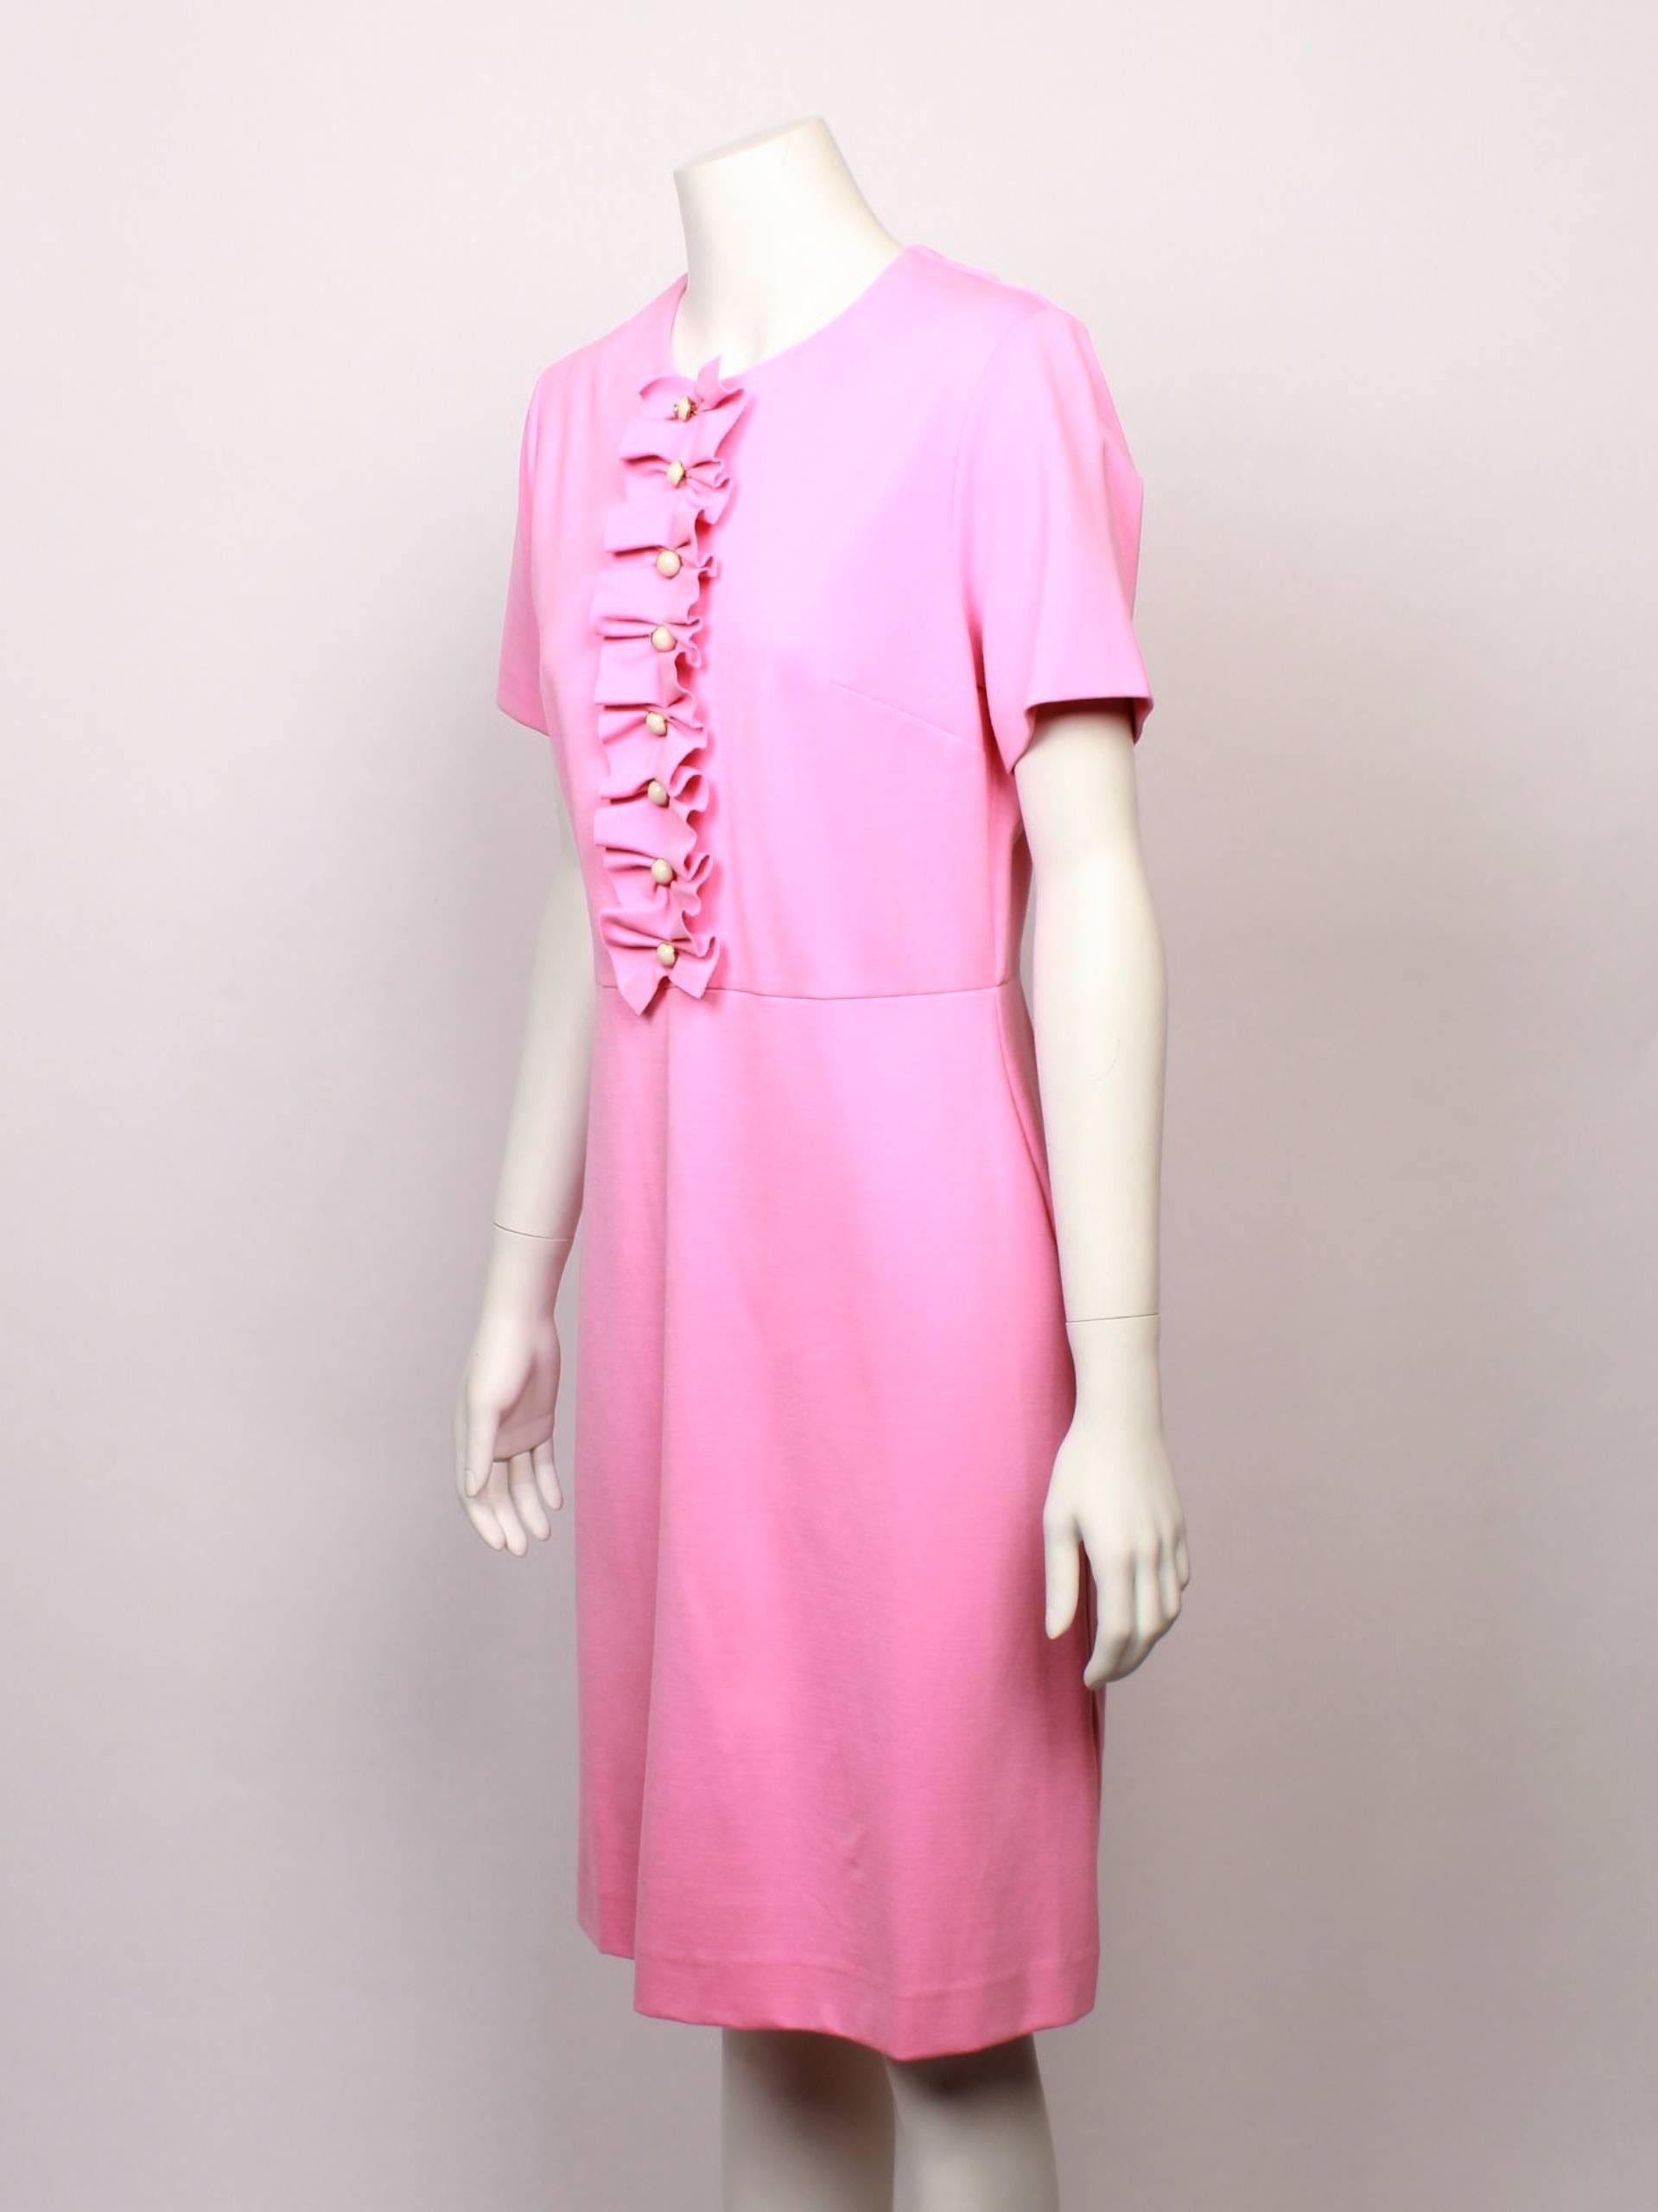 Gucci Frill Dress (Pink)